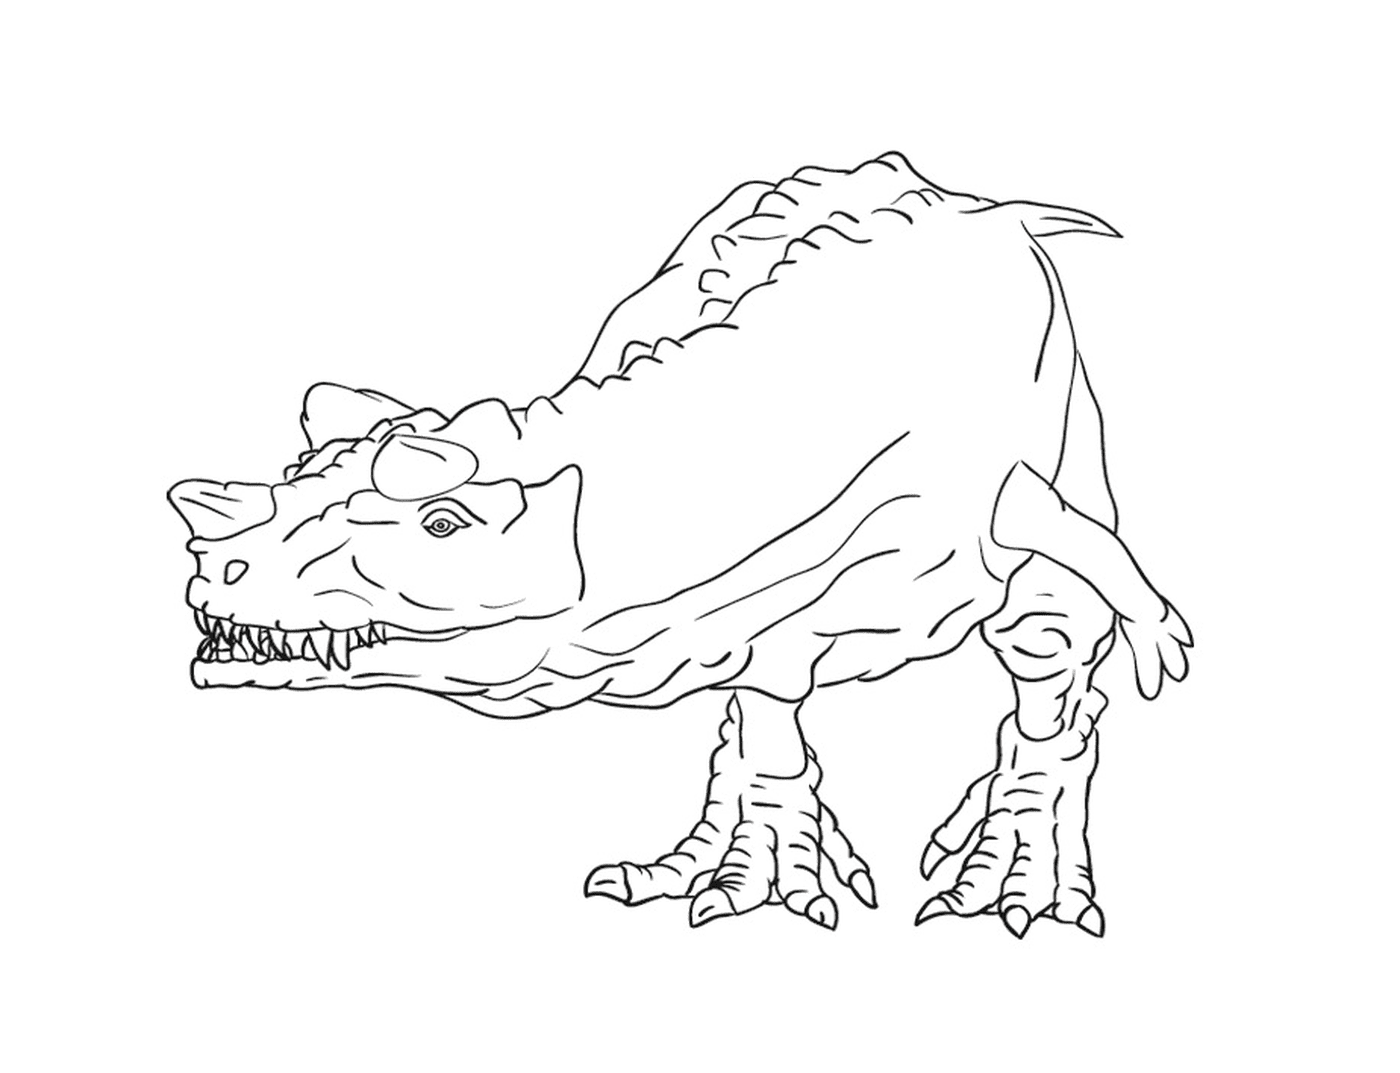  Dibujo de un dinosaurio limpio y detallado 